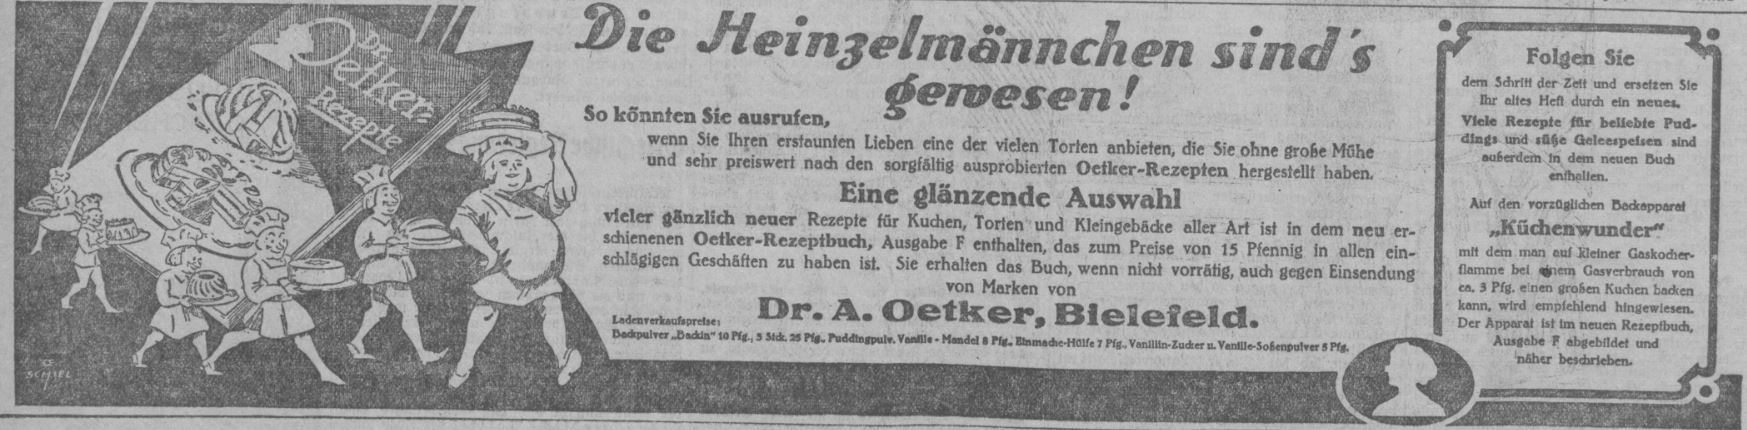 38_Muenchner Neueste Nachrichten_1926_12_09_Nr340_p6_Backen_Rezepte_Kuchen_Dr-Oetker_Heinzelmaennchen